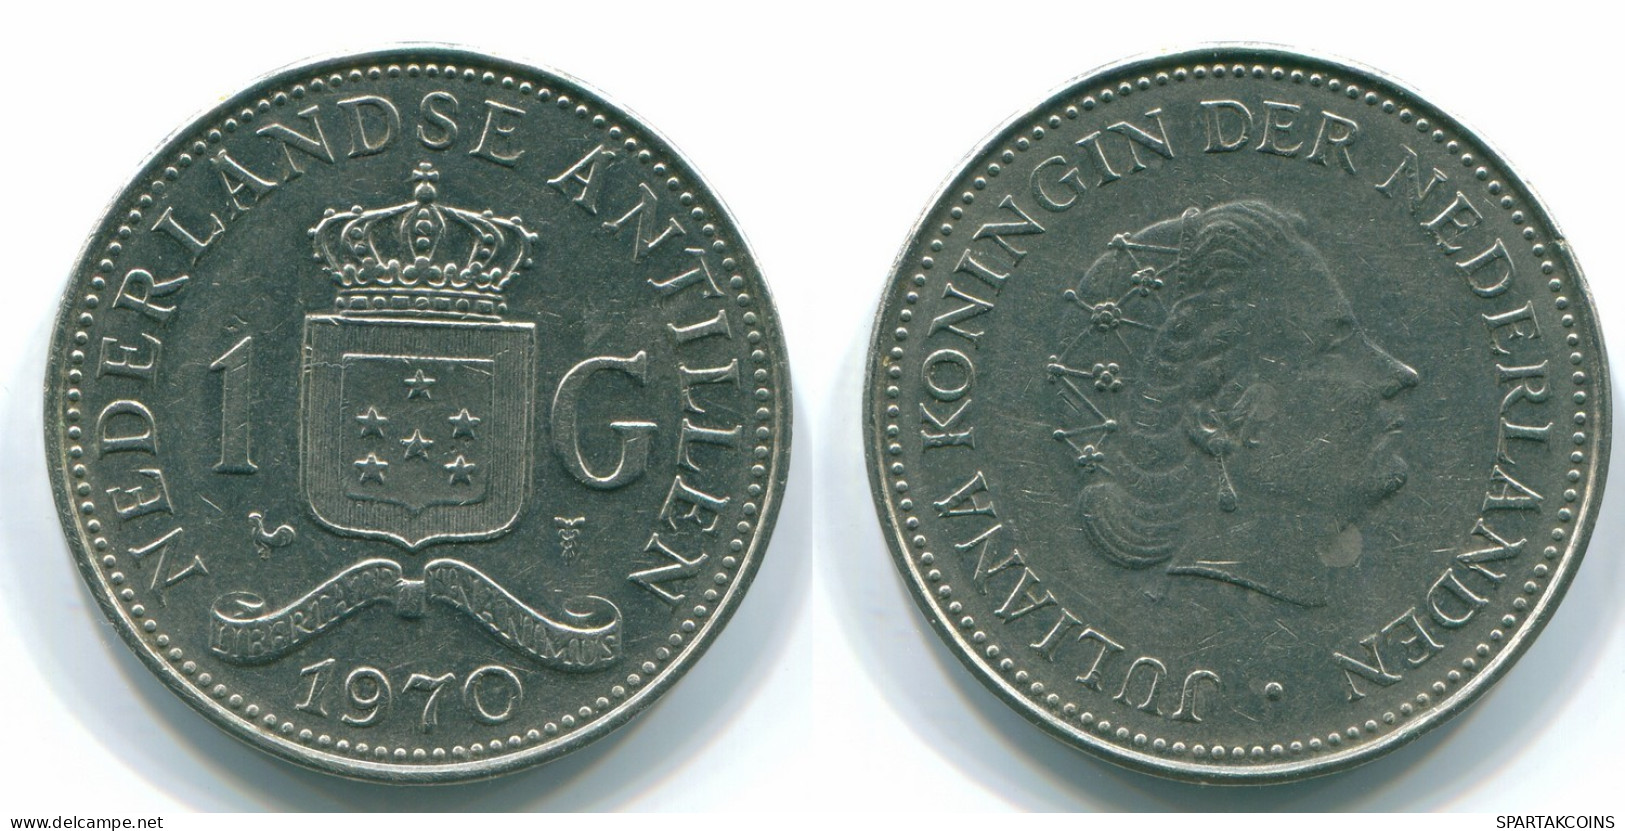 1 GULDEN 1970 NETHERLANDS ANTILLES Nickel Colonial Coin #S11898.U.A - Niederländische Antillen